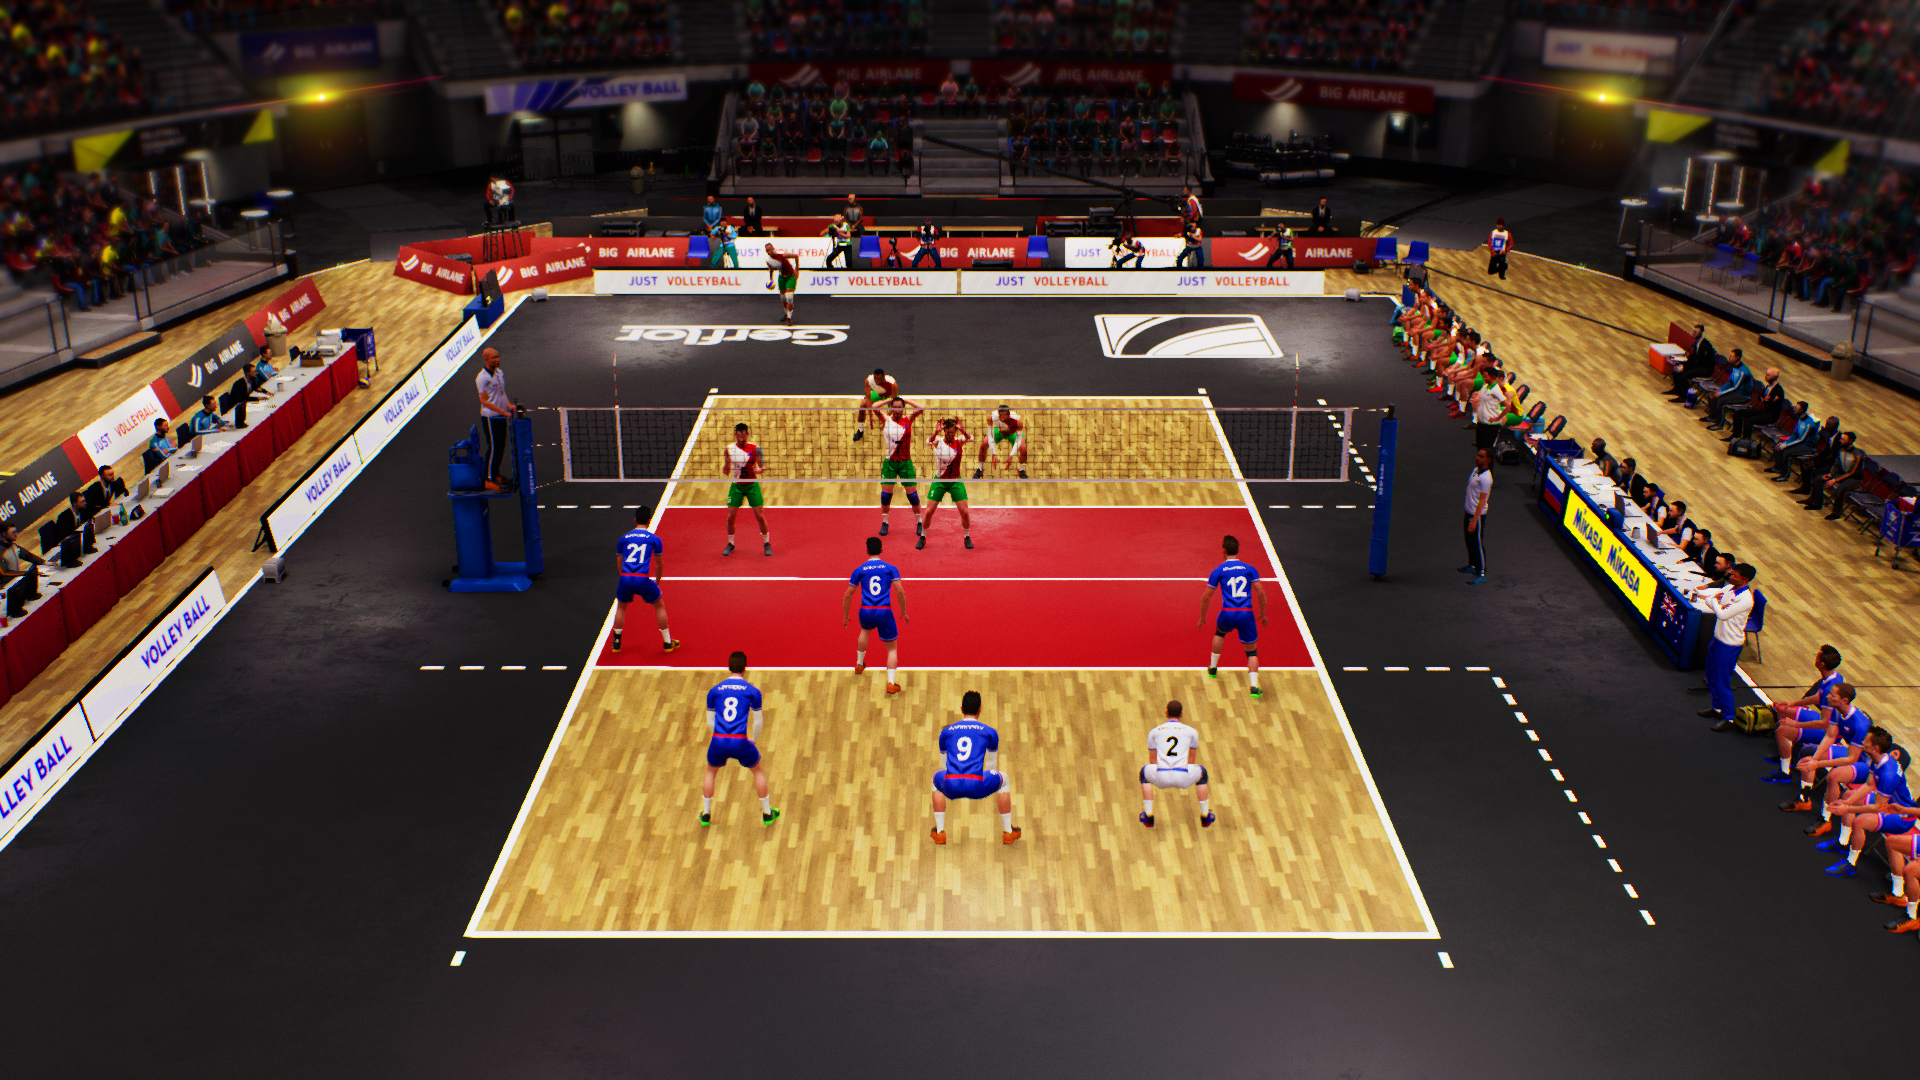 Spike Volleyball screenshot